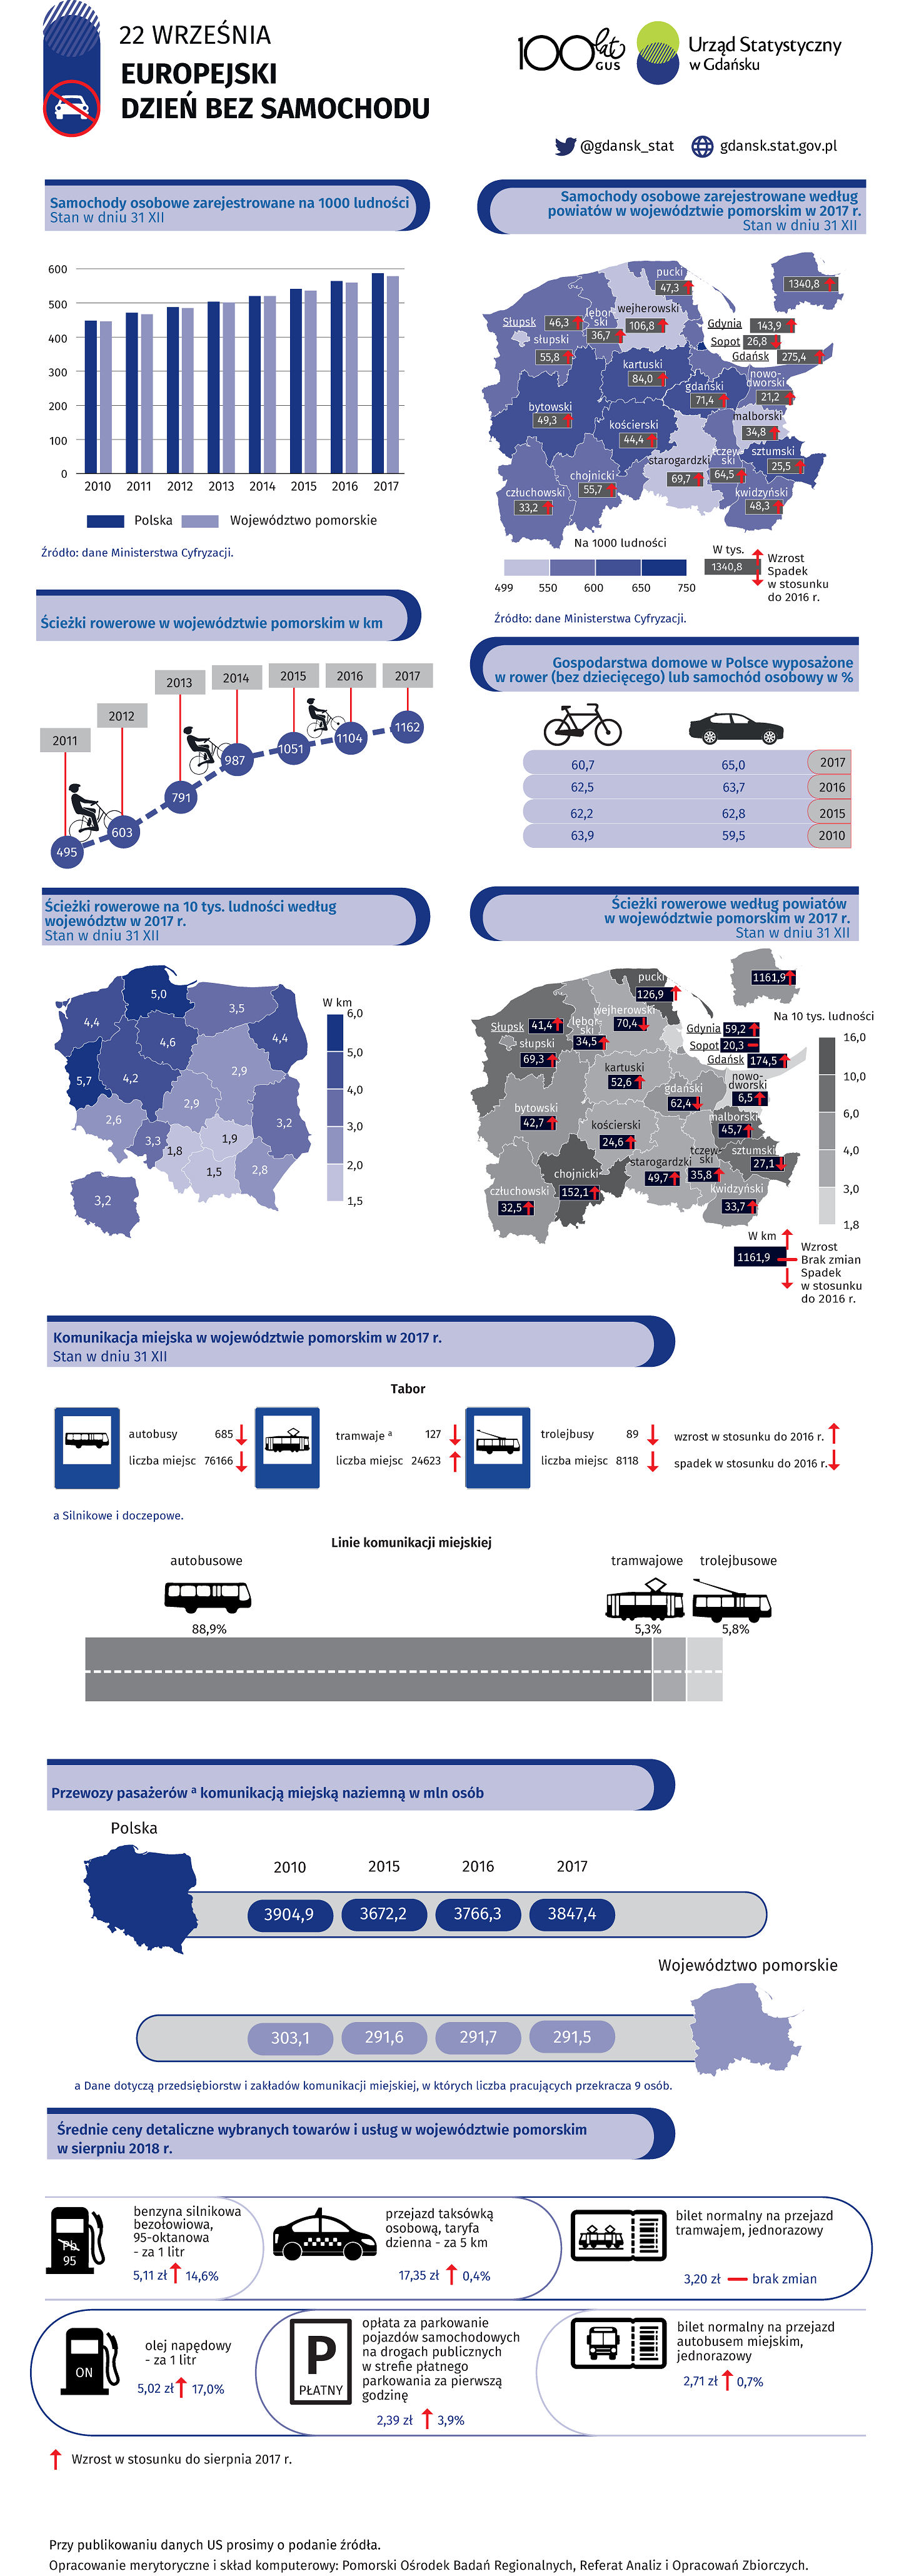 22 września - Europejski Dzień Bez Samochodu - infografika